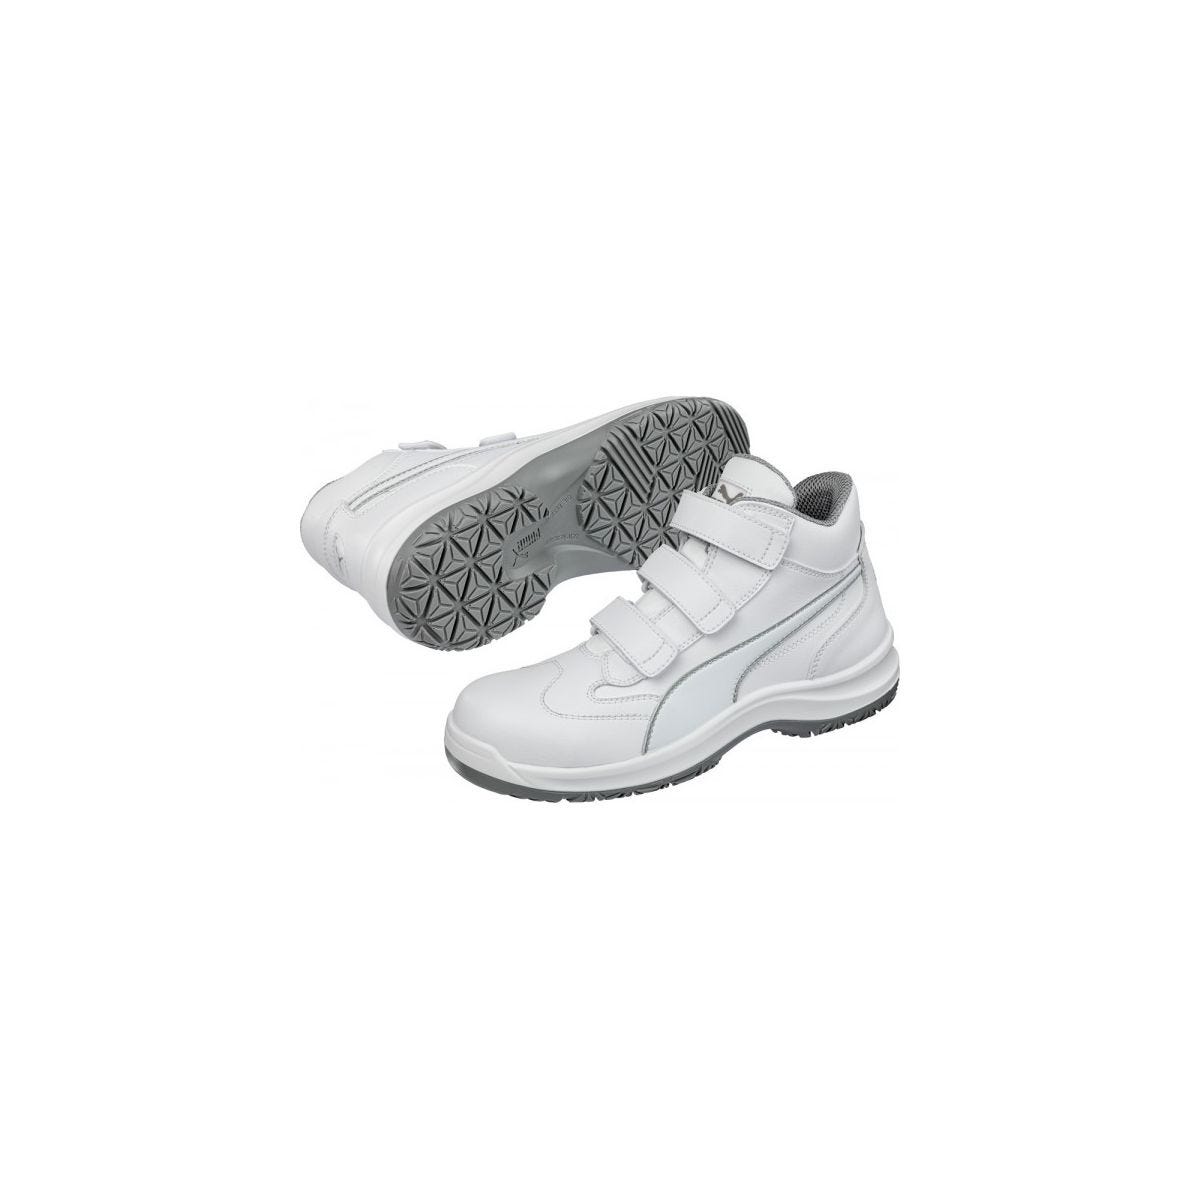 Chaussures de sécurité Absolute Mid S2 Blanc - Puma - Taille 36 2